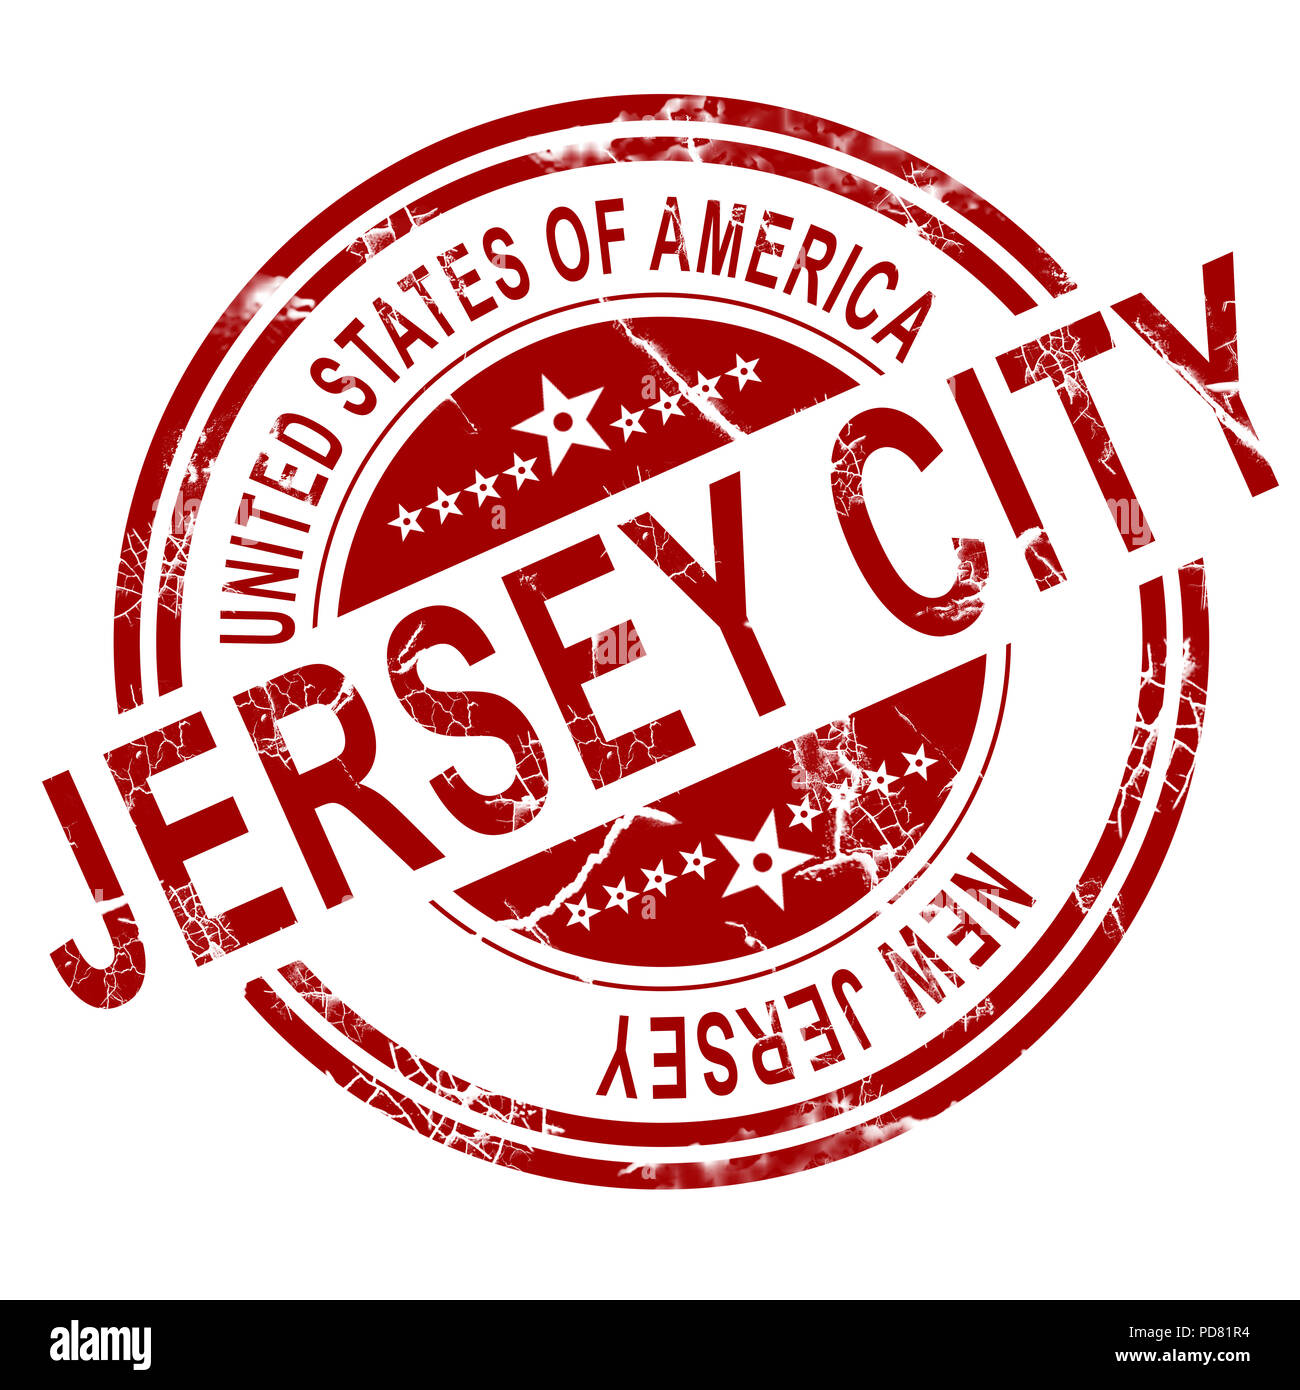 La ciudad de Jersey rojo con fondo blanco, 3D rendering Foto de stock